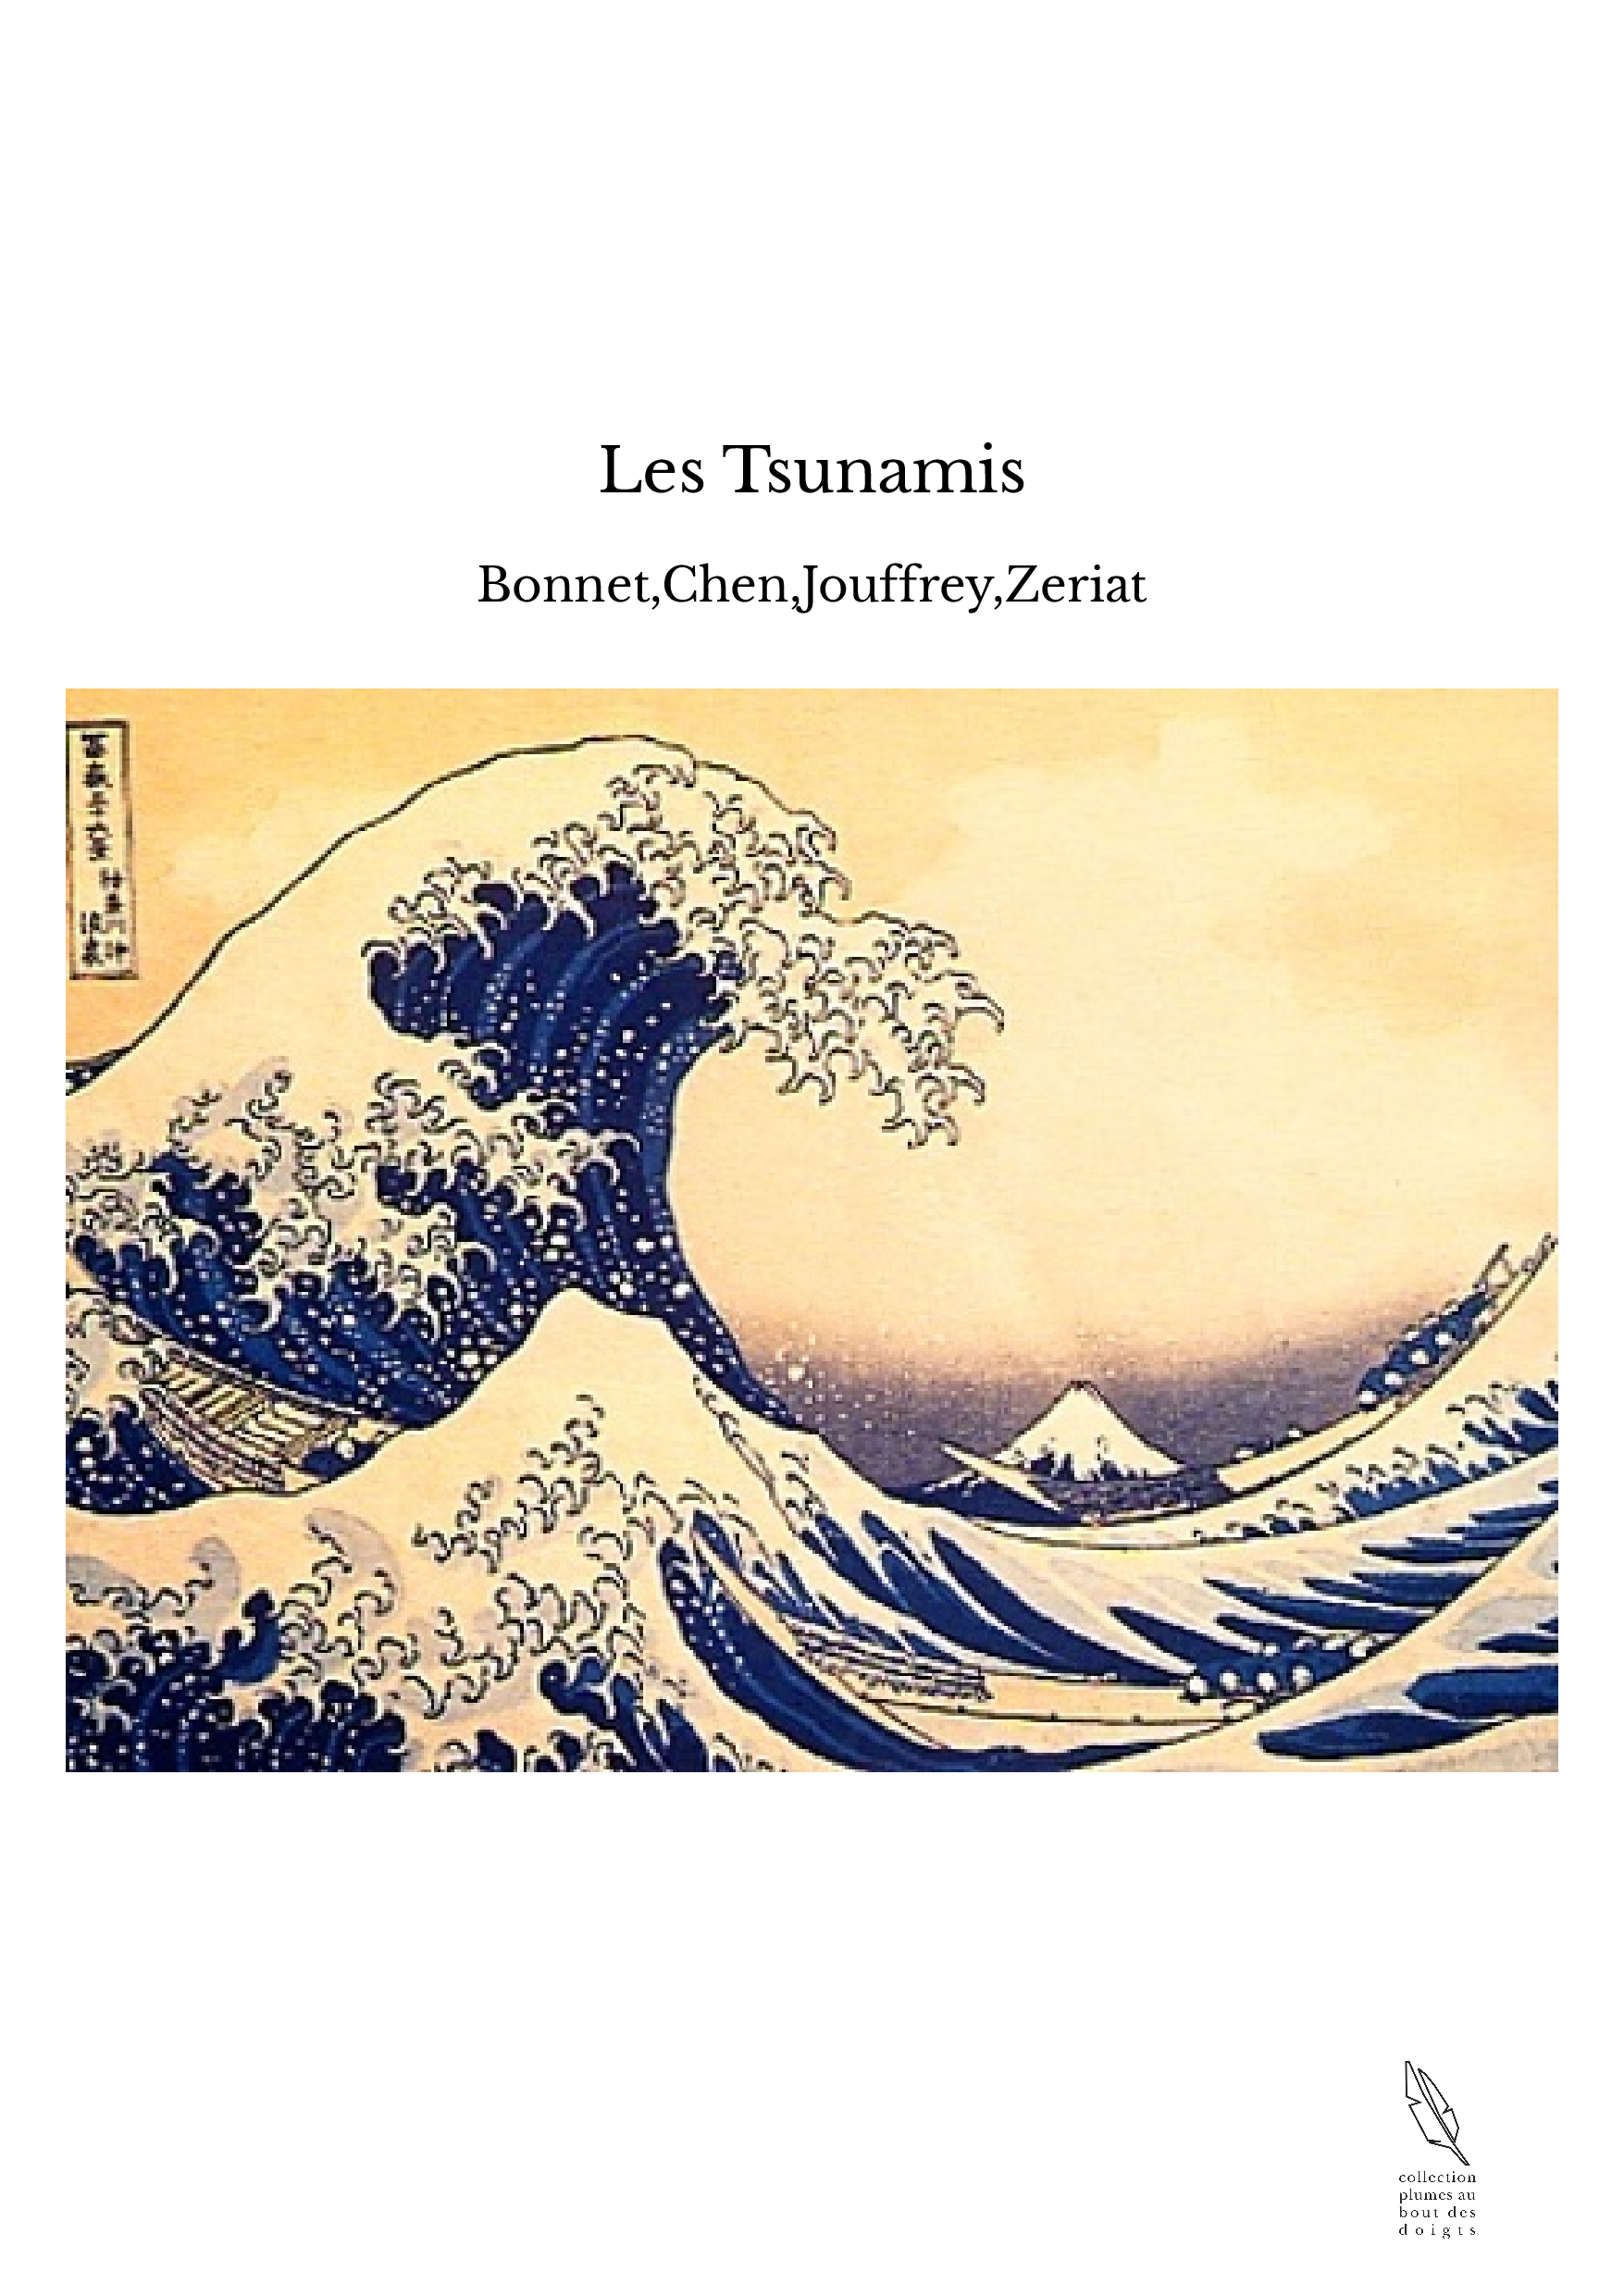 Les Tsunamis